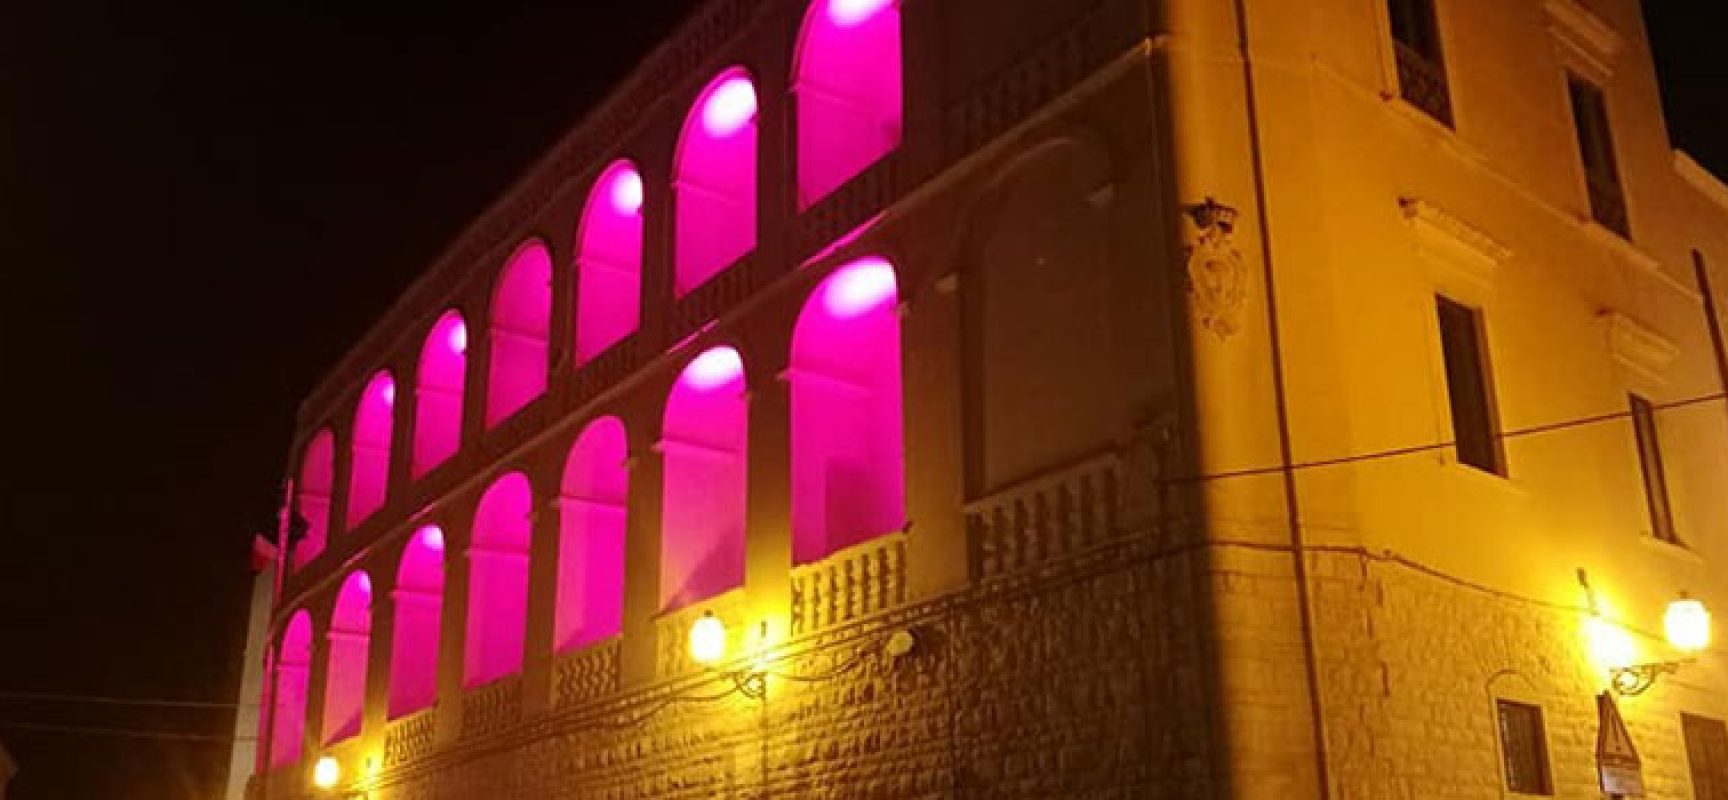 Prevenzione tumore seno, Palazzo San Domenico e Teatro Garibaldi illuminati di rosa